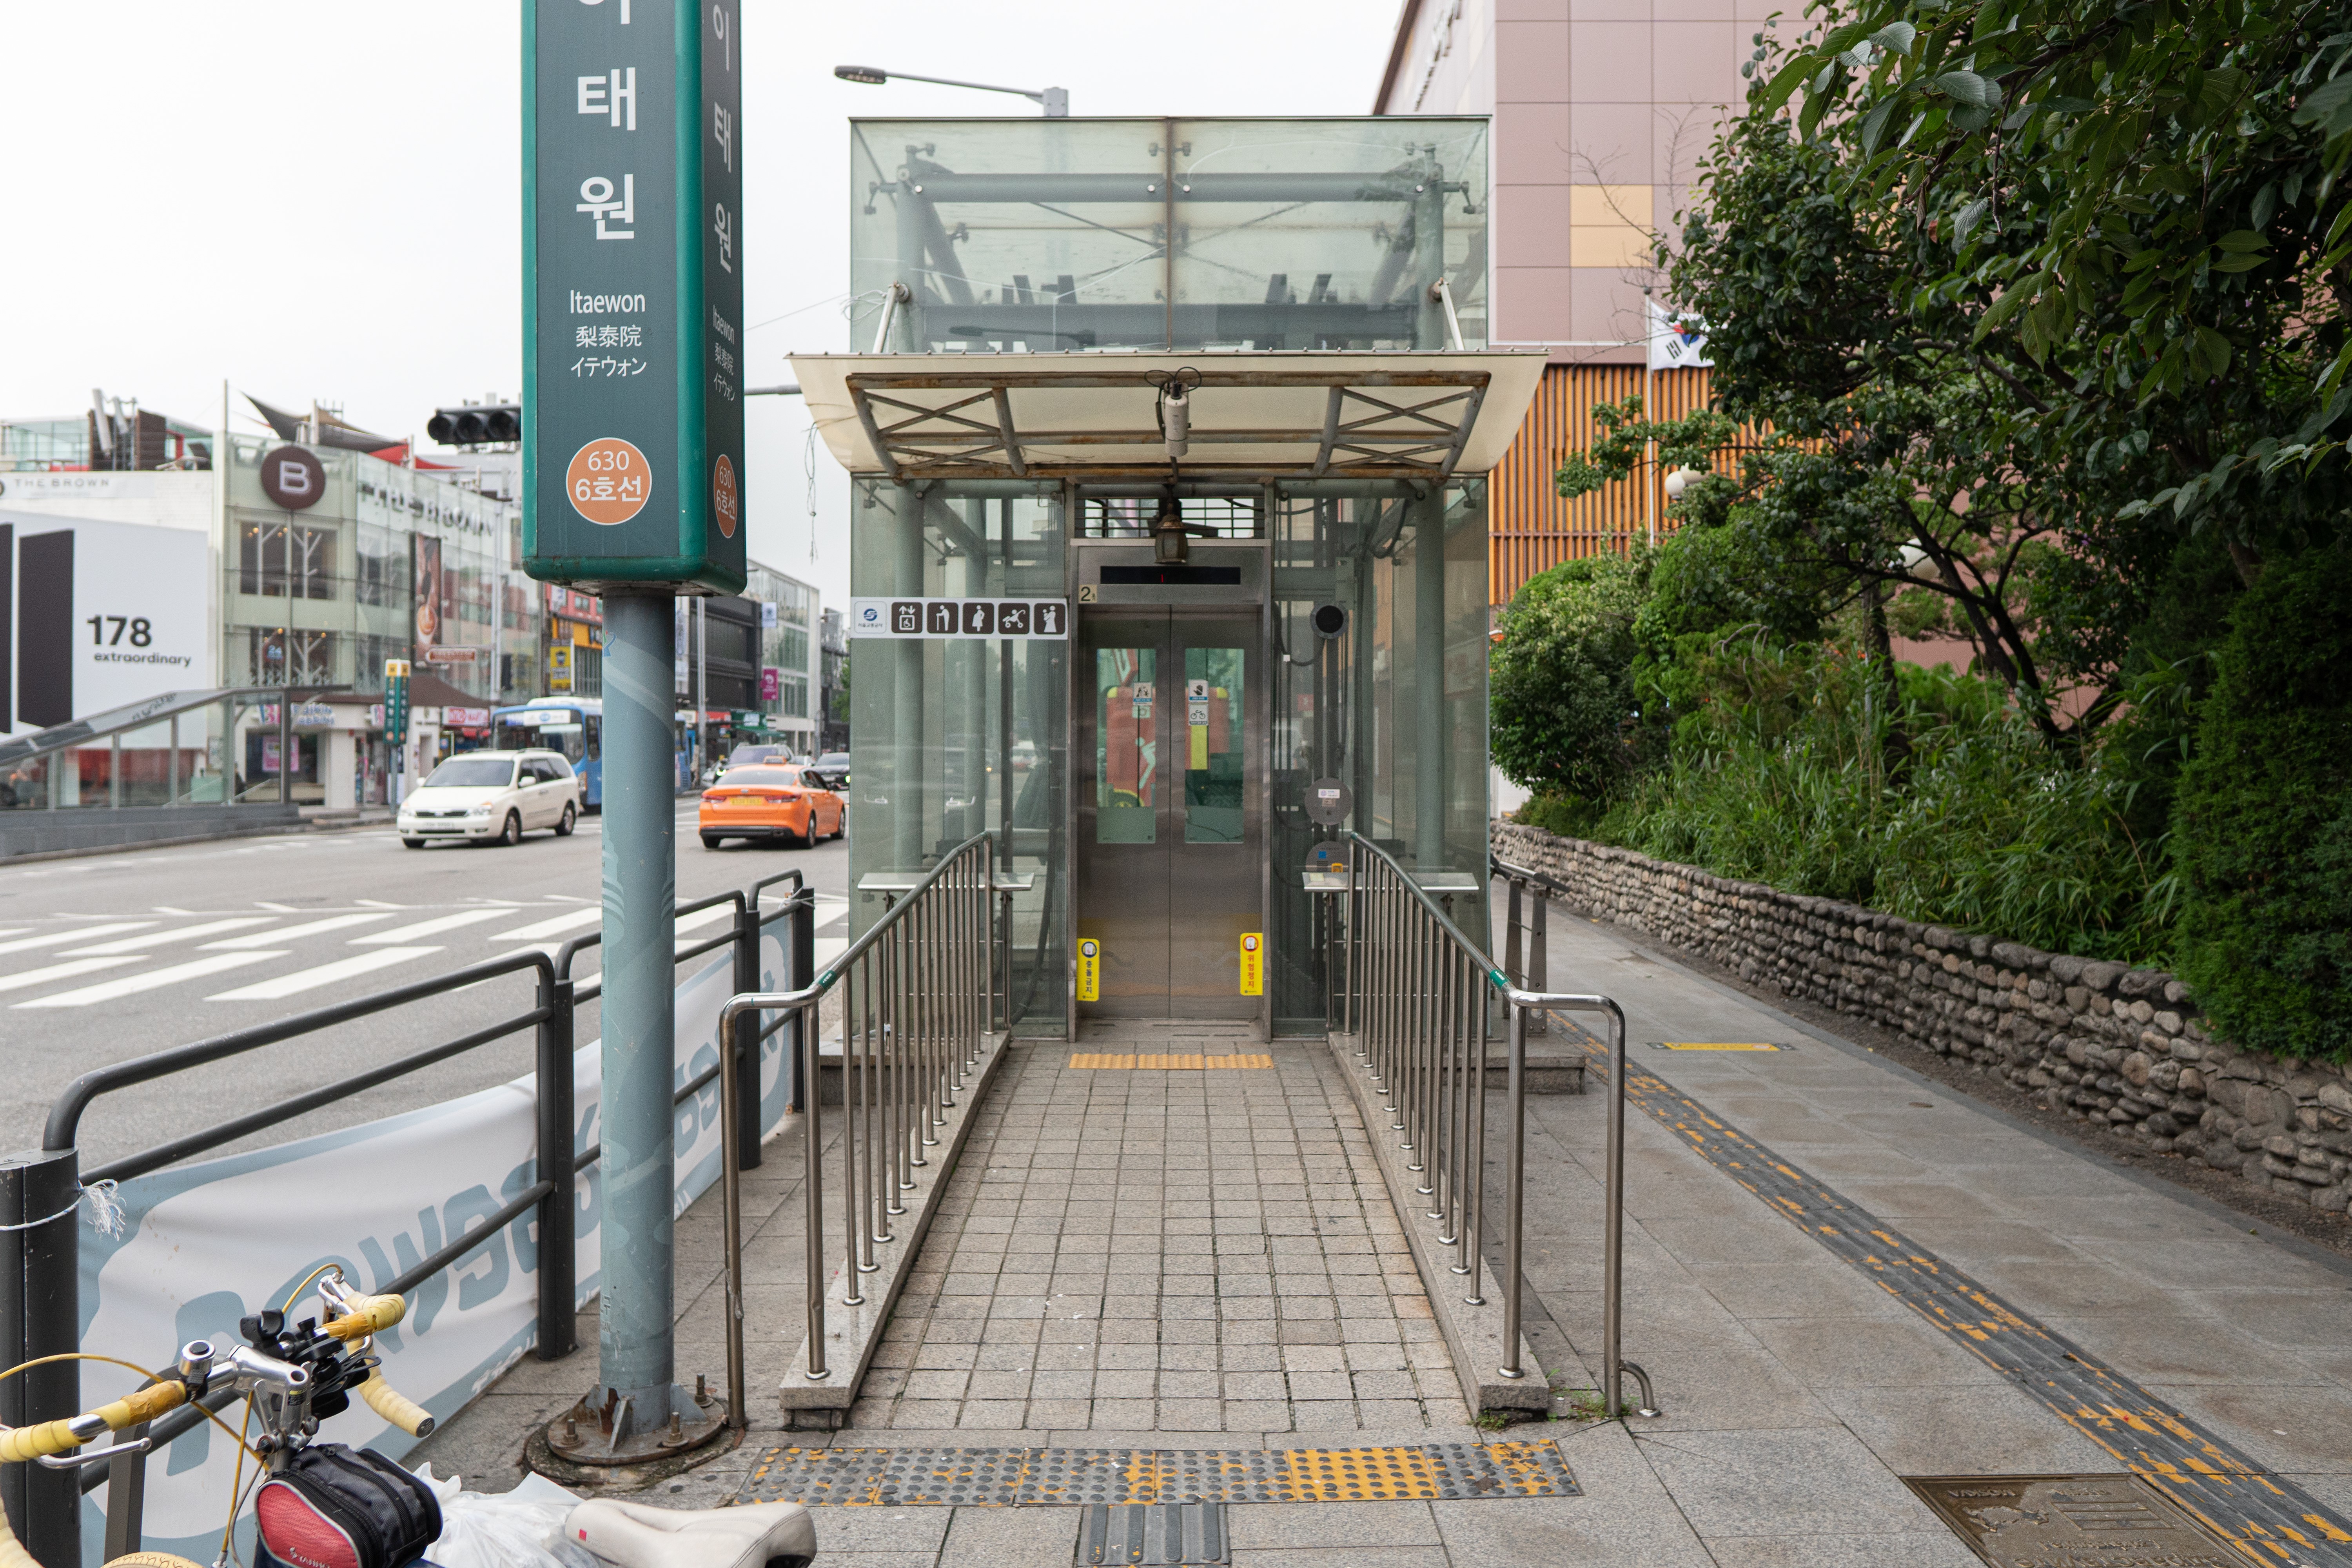 이태원 관광안내소(지하)1 : 6호선 이태원역에서 엘리베이터로도 이용 가능한 접근로